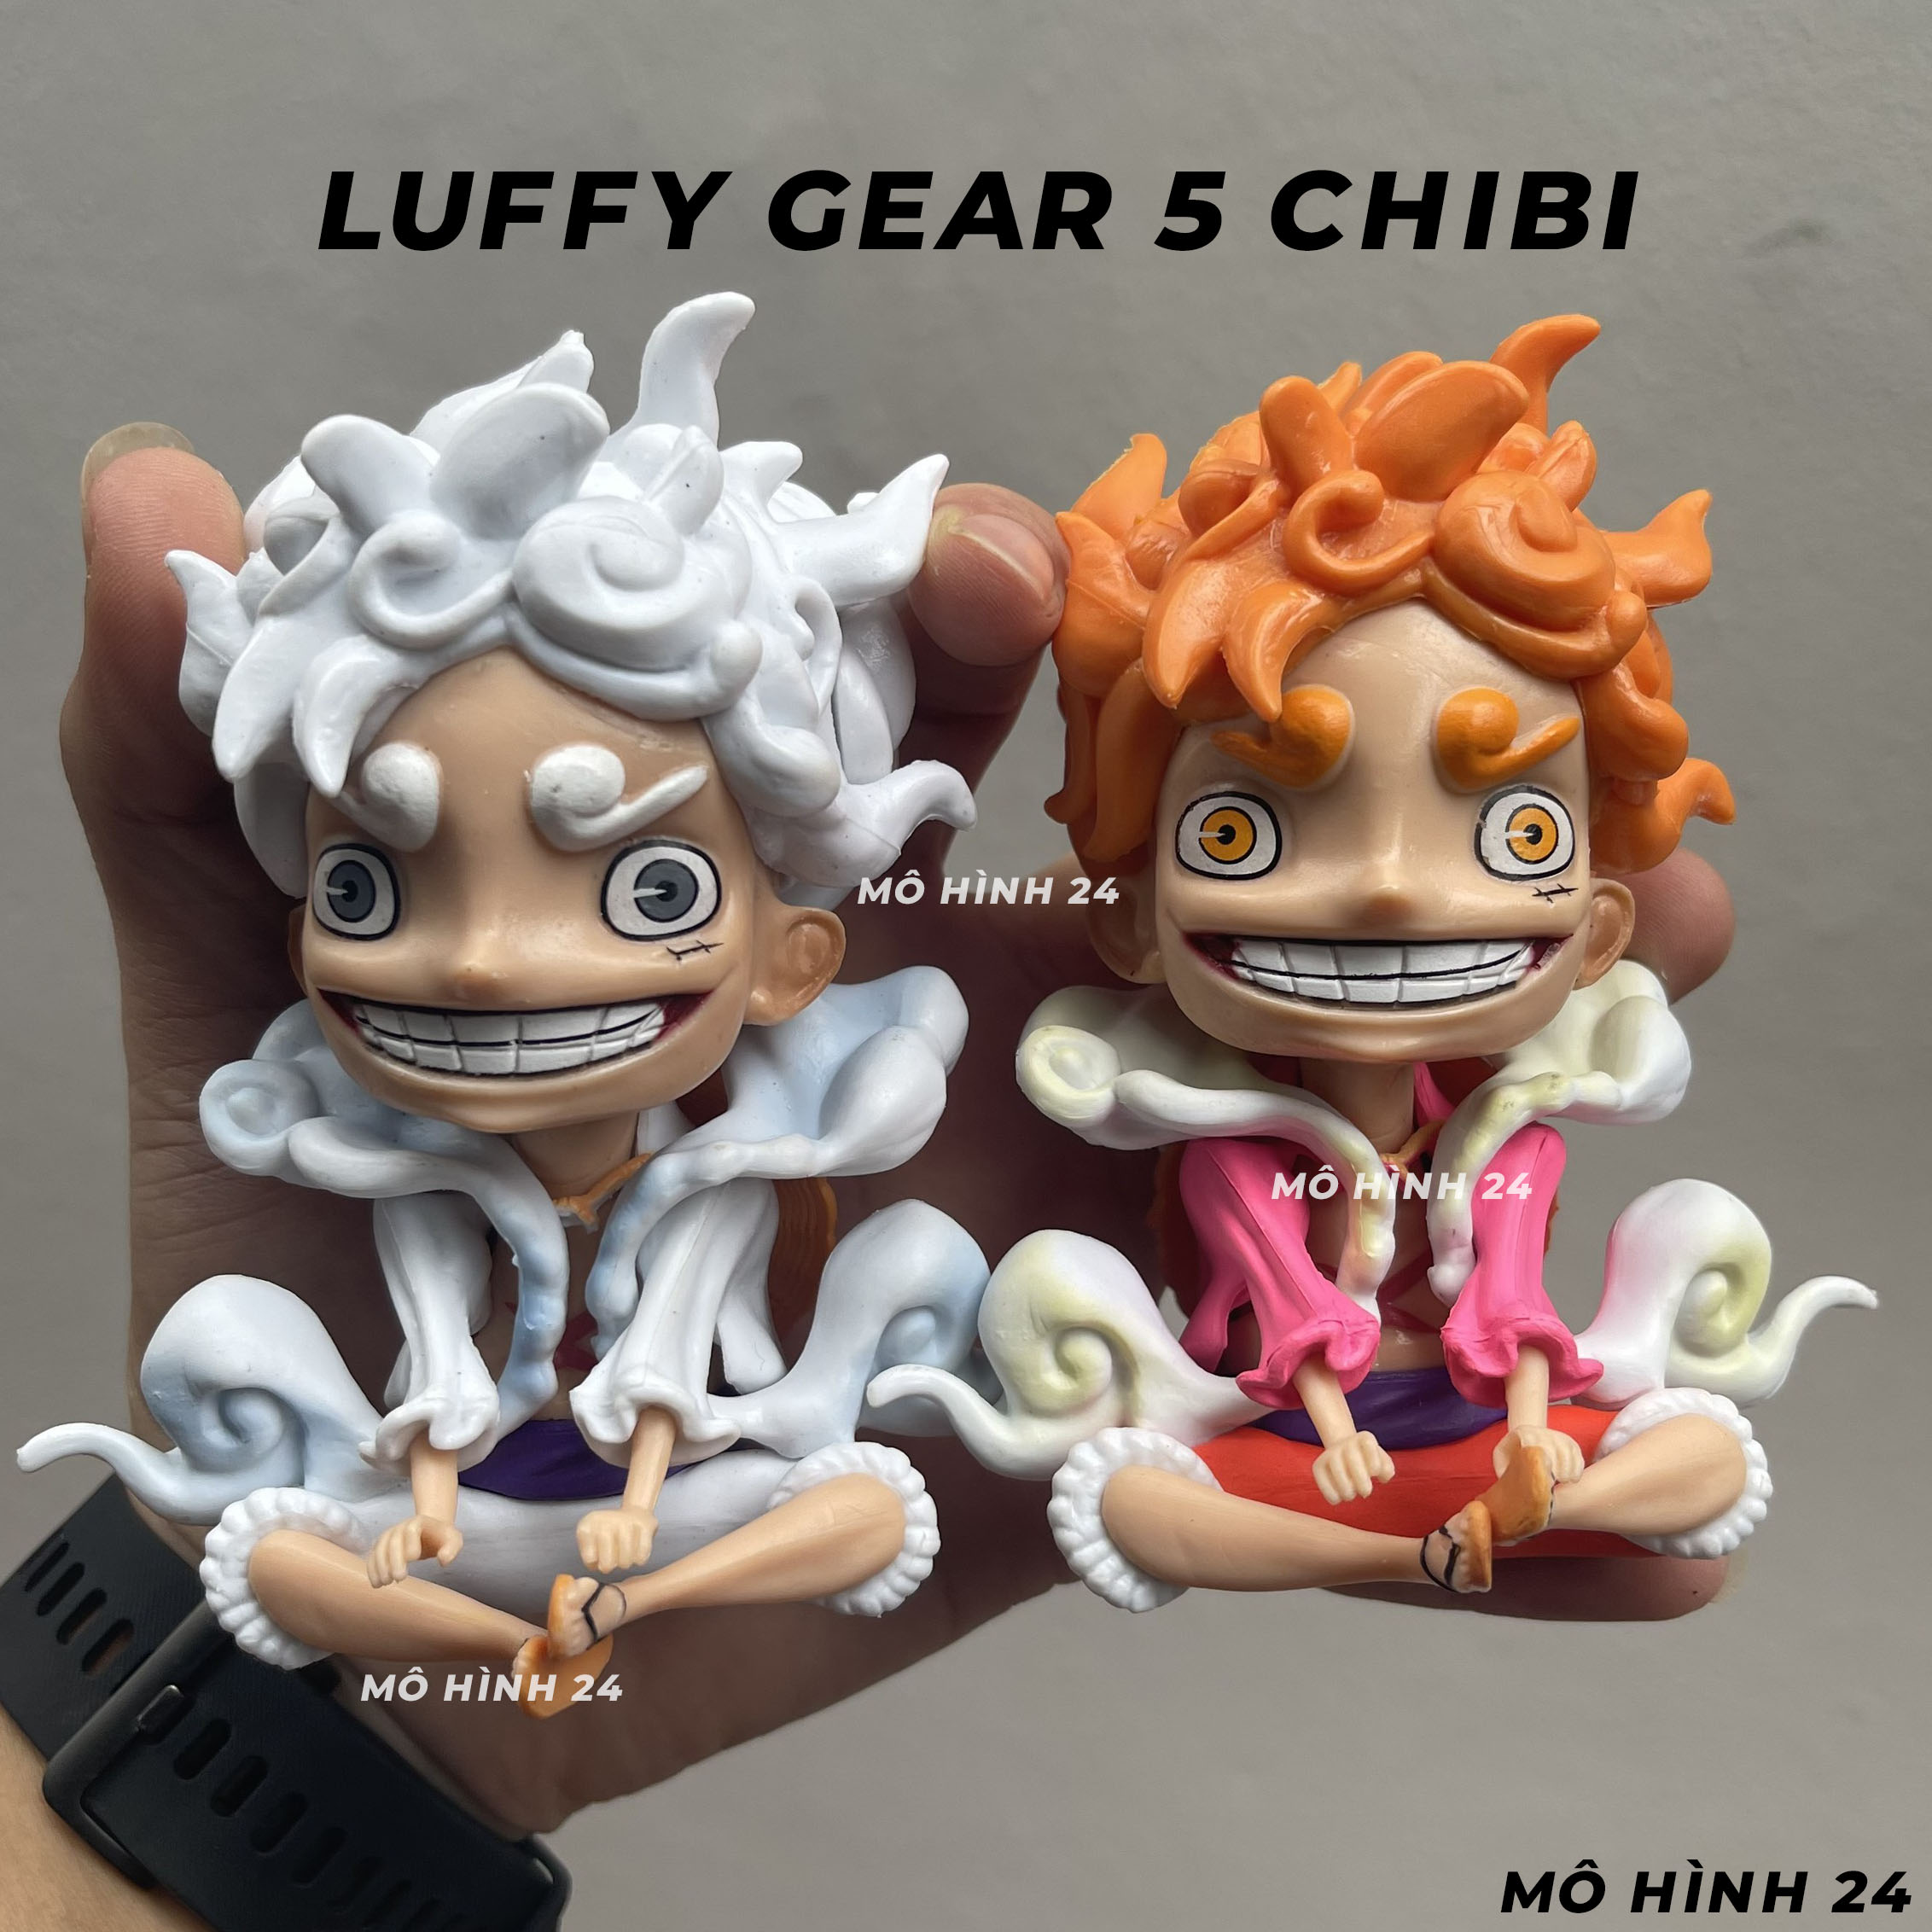 Mô hình Luffy Gear 5 Chibi 2024 đang là niềm mơ ước của bất cứ fan nào yêu thích One Piece. Với sự phát triển của công nghệ, chiếc mô hình này đem lại cảm giác sống động hơn bao giờ hết. Với độ chính xác cao, chi tiết tuyệt vời, bạn sẽ không muốn bỏ qua cơ hội để sở hữu chiếc mô hình đặc biệt này.